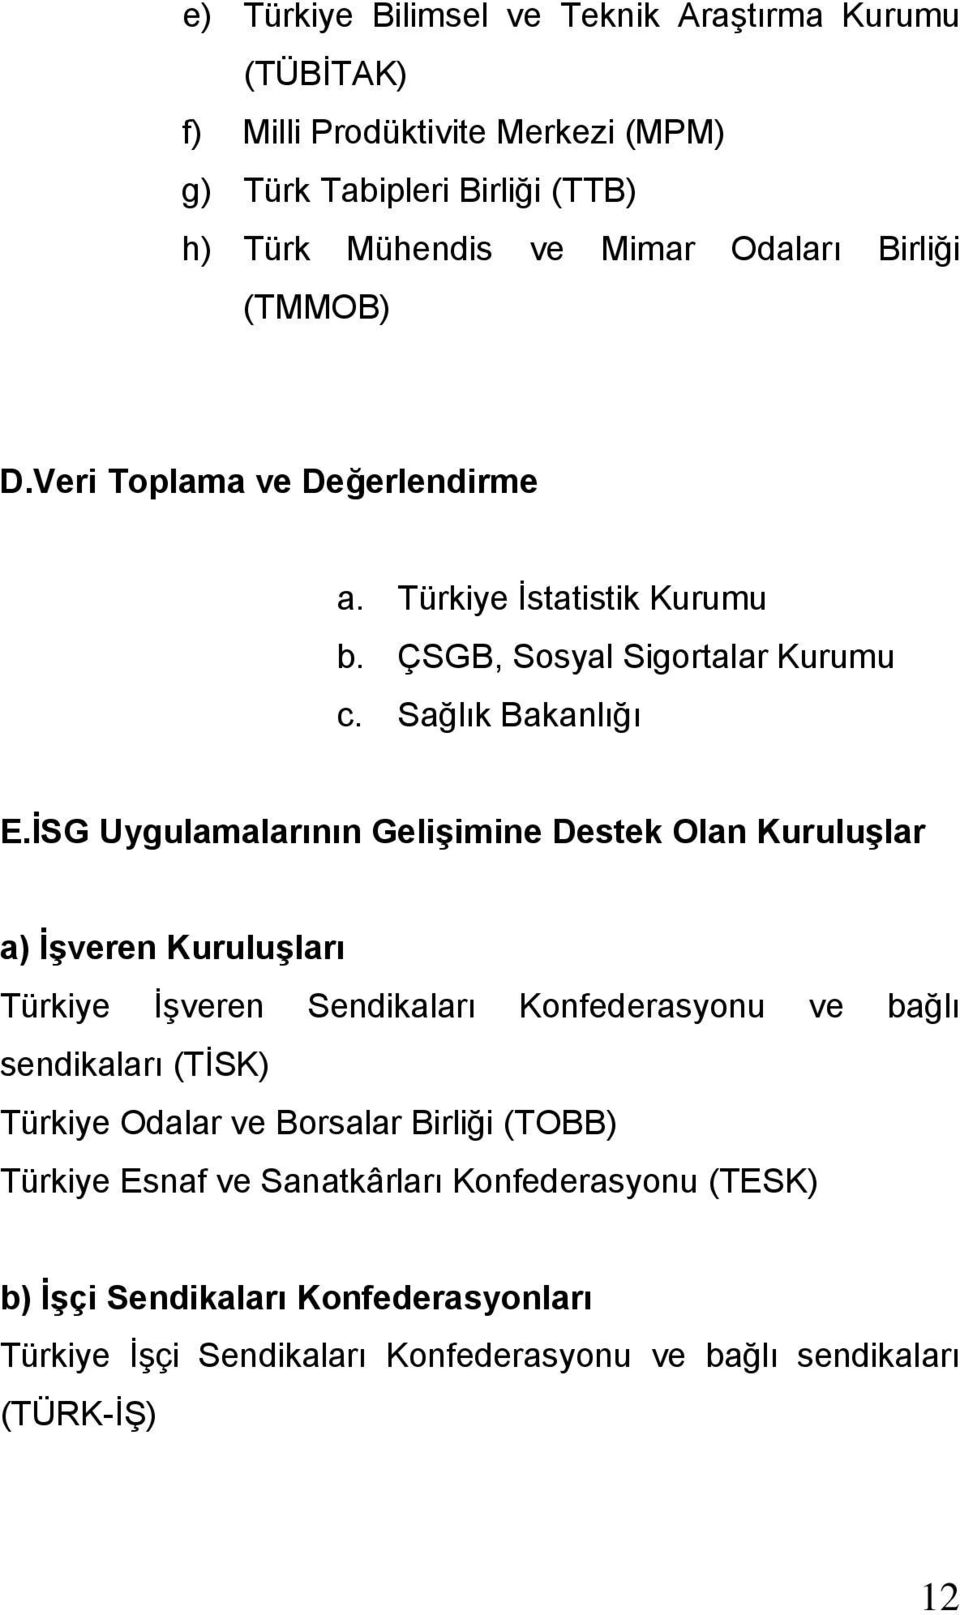 İSG Uygulamalarının Gelişimine Destek Olan Kuruluşlar a) İşveren Kuruluşları Türkiye İşveren Sendikaları Konfederasyonu ve bağlı sendikaları (TİSK) Türkiye